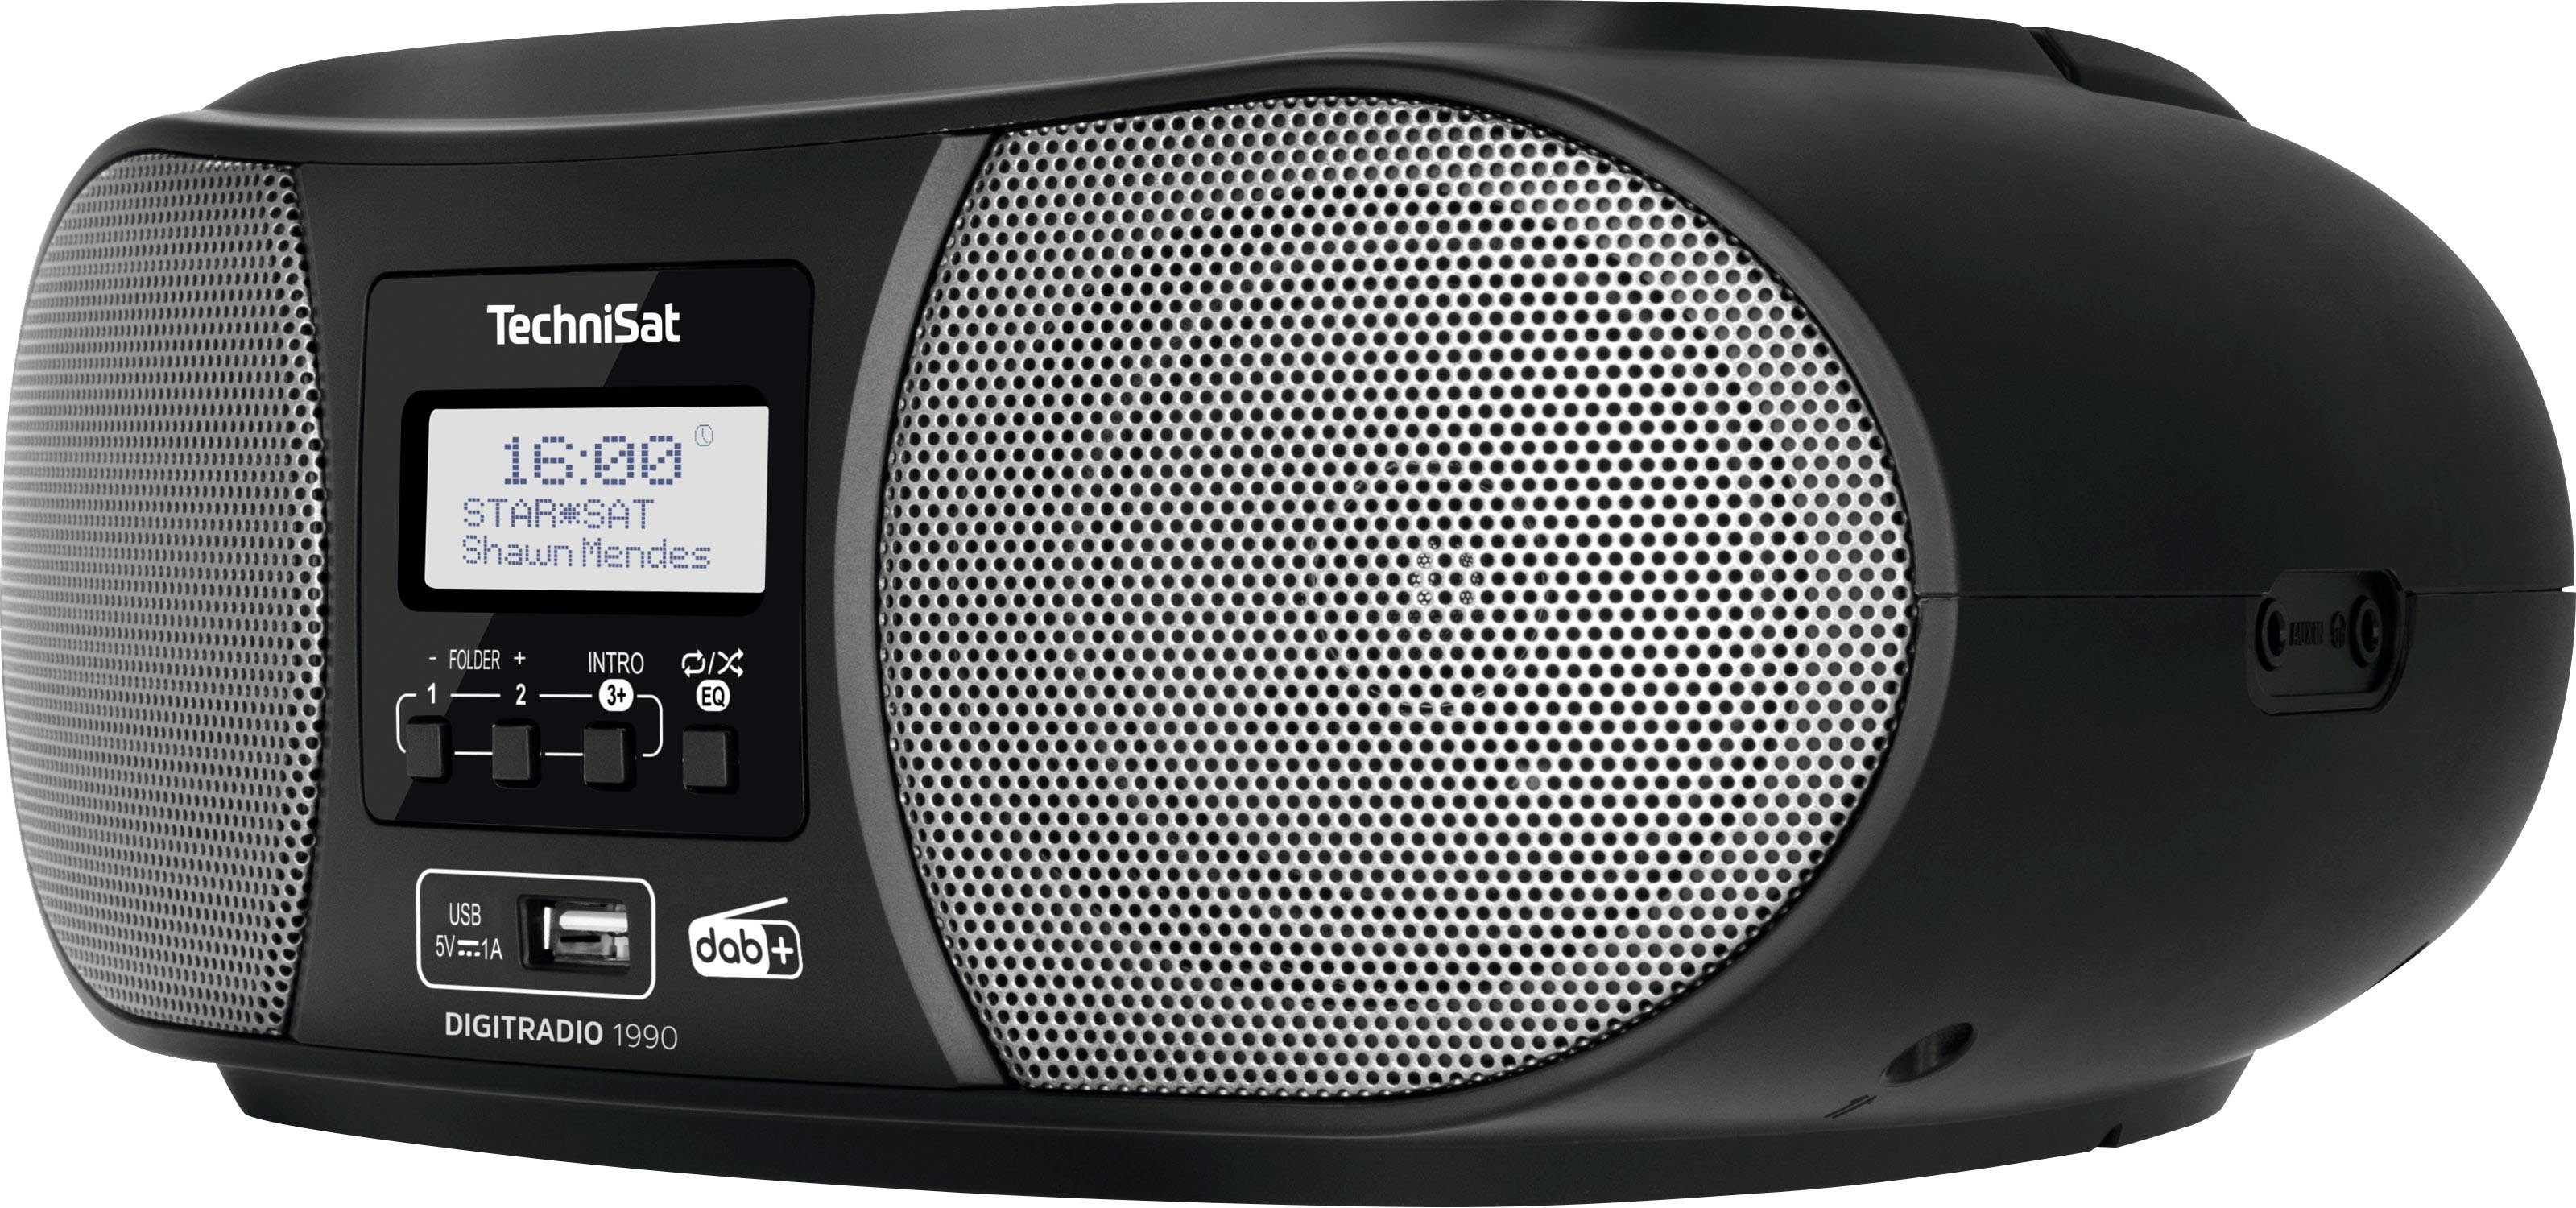 Digitradio Stereo- (Digitalradio Batteriebetrieb (DAB), DAB+, UKW, 1990 möglich) Bluetooth, schwarz mit USB, TechniSat CD-Player, FM-Tuner, Boombox